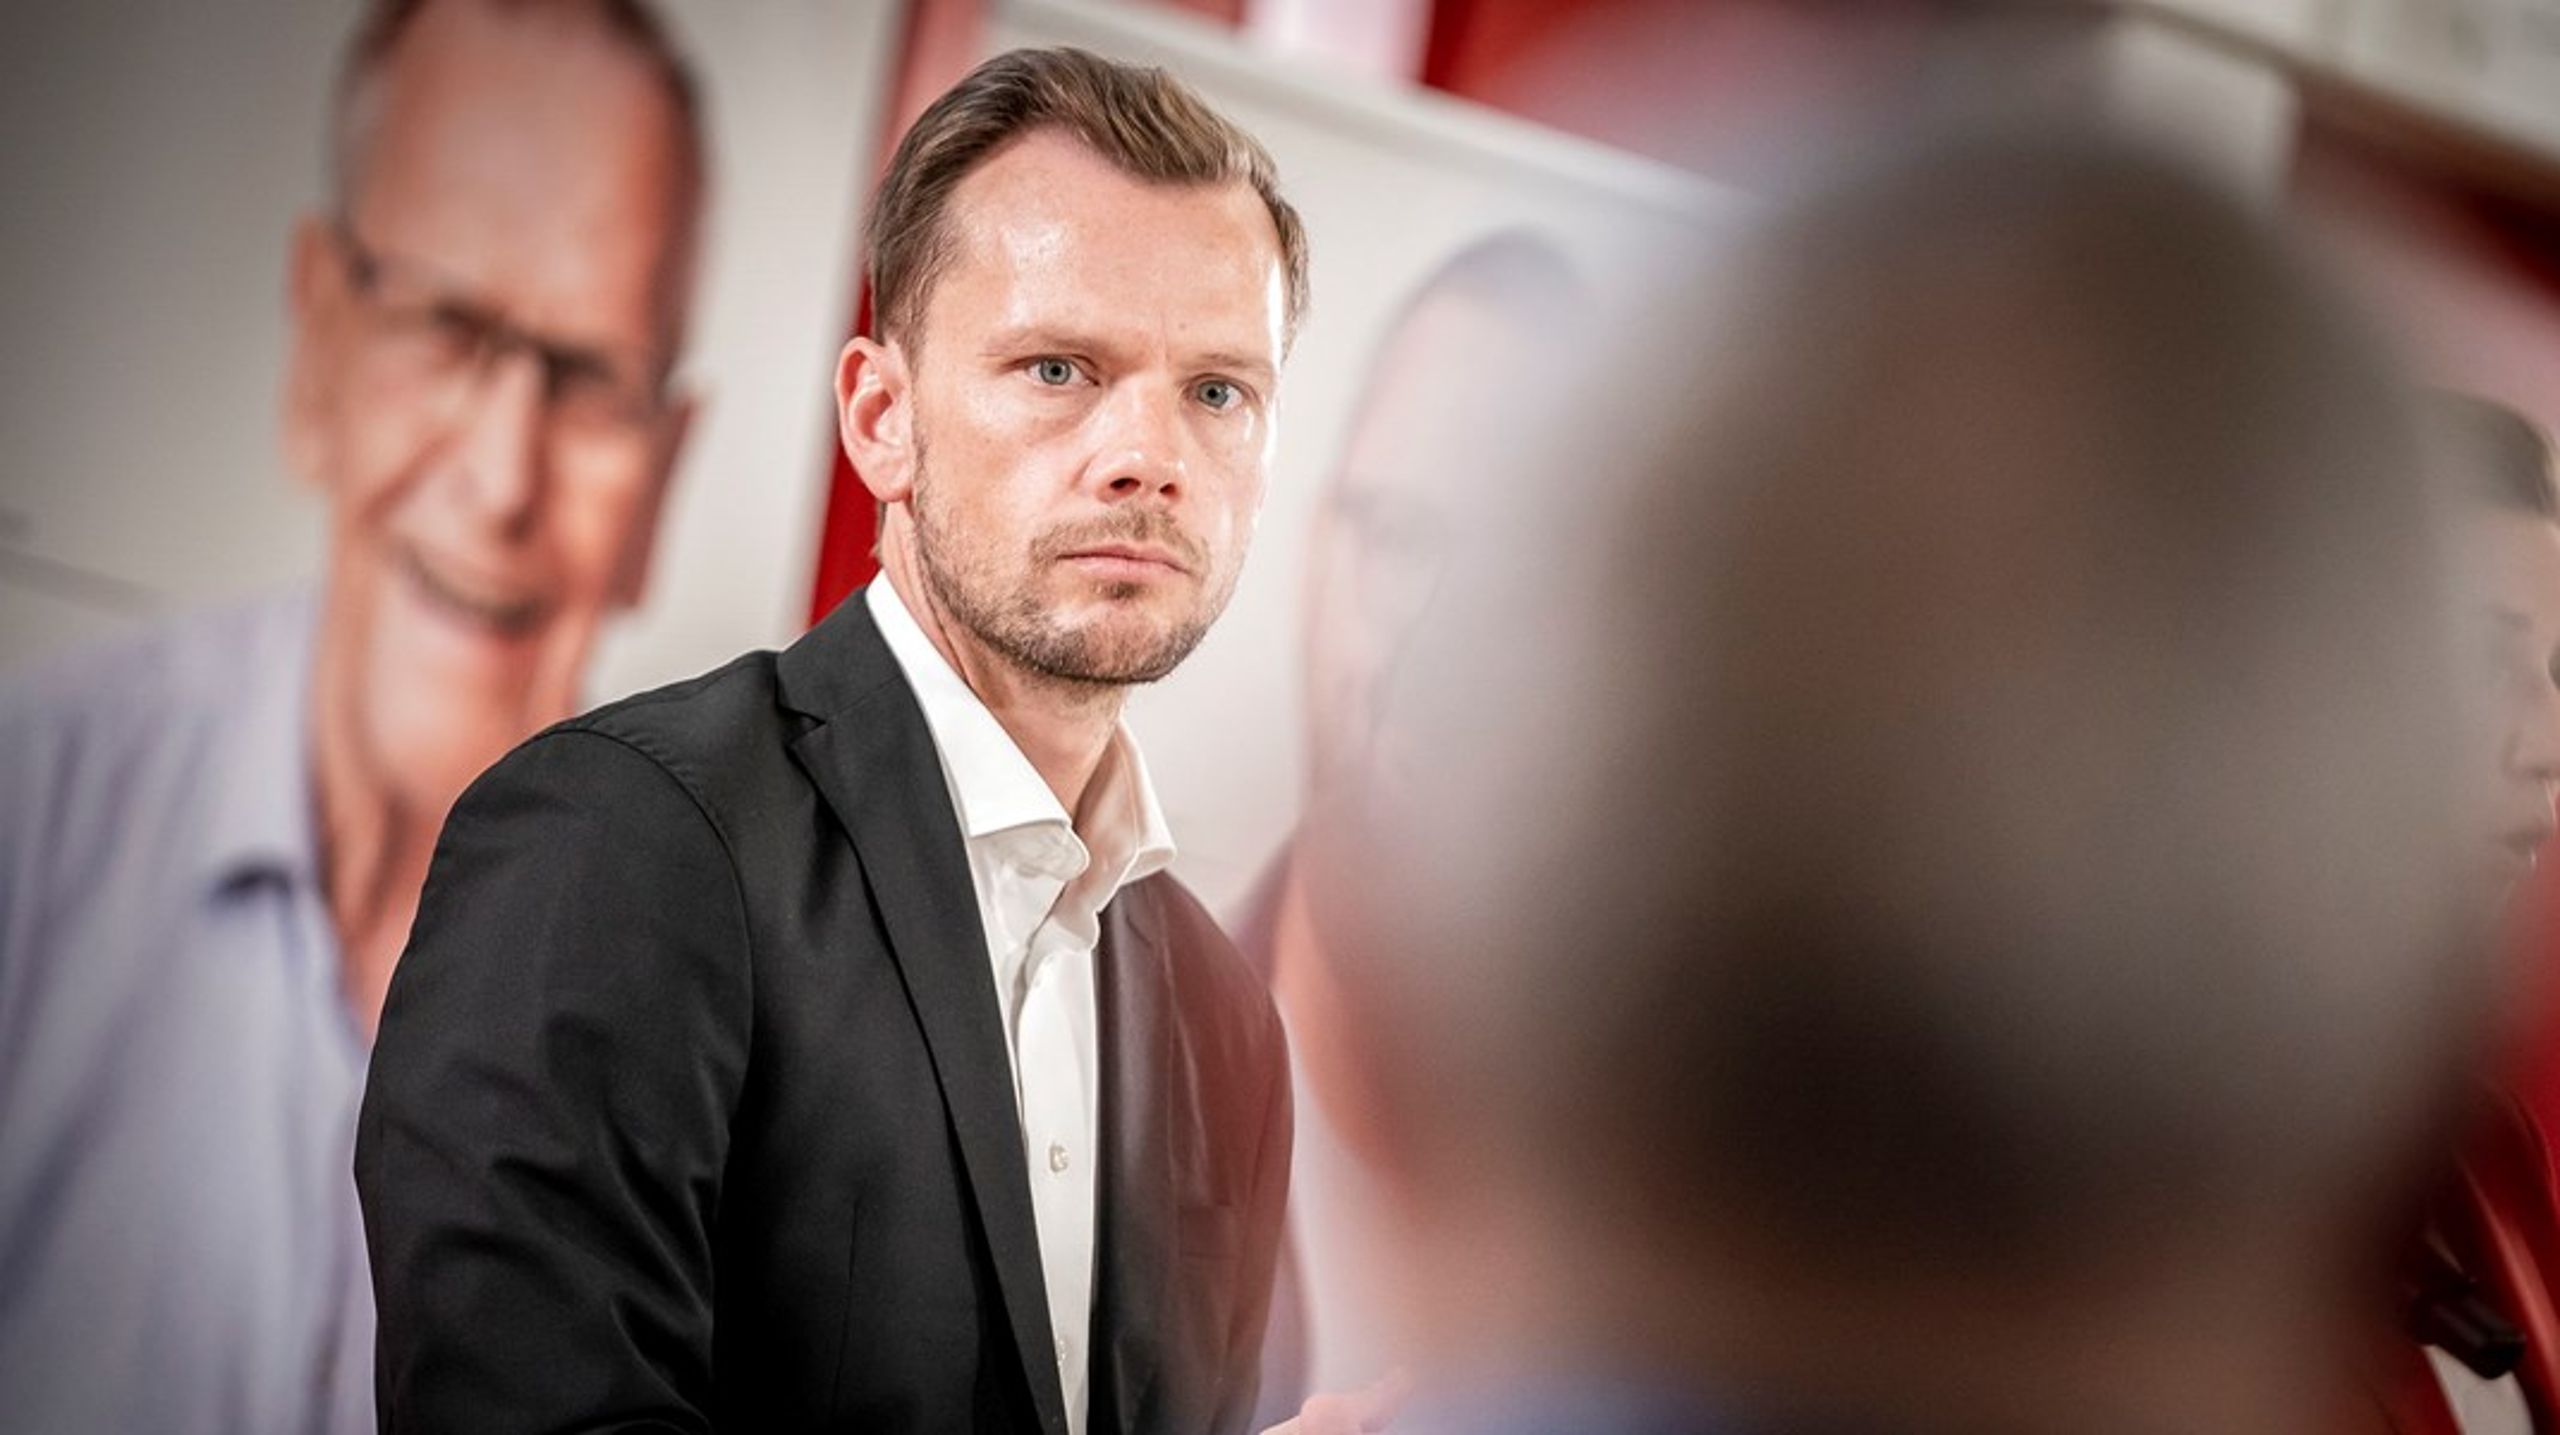 Beskæftigelsesminister Peter Hummelgaard (S) var onsdag med til at præsentere Socialdemokratiets bud på bedre arbejdsvilkår for offentligt ansatte. Det skete ved et pressemøde på Plejecenter Sølund i København.